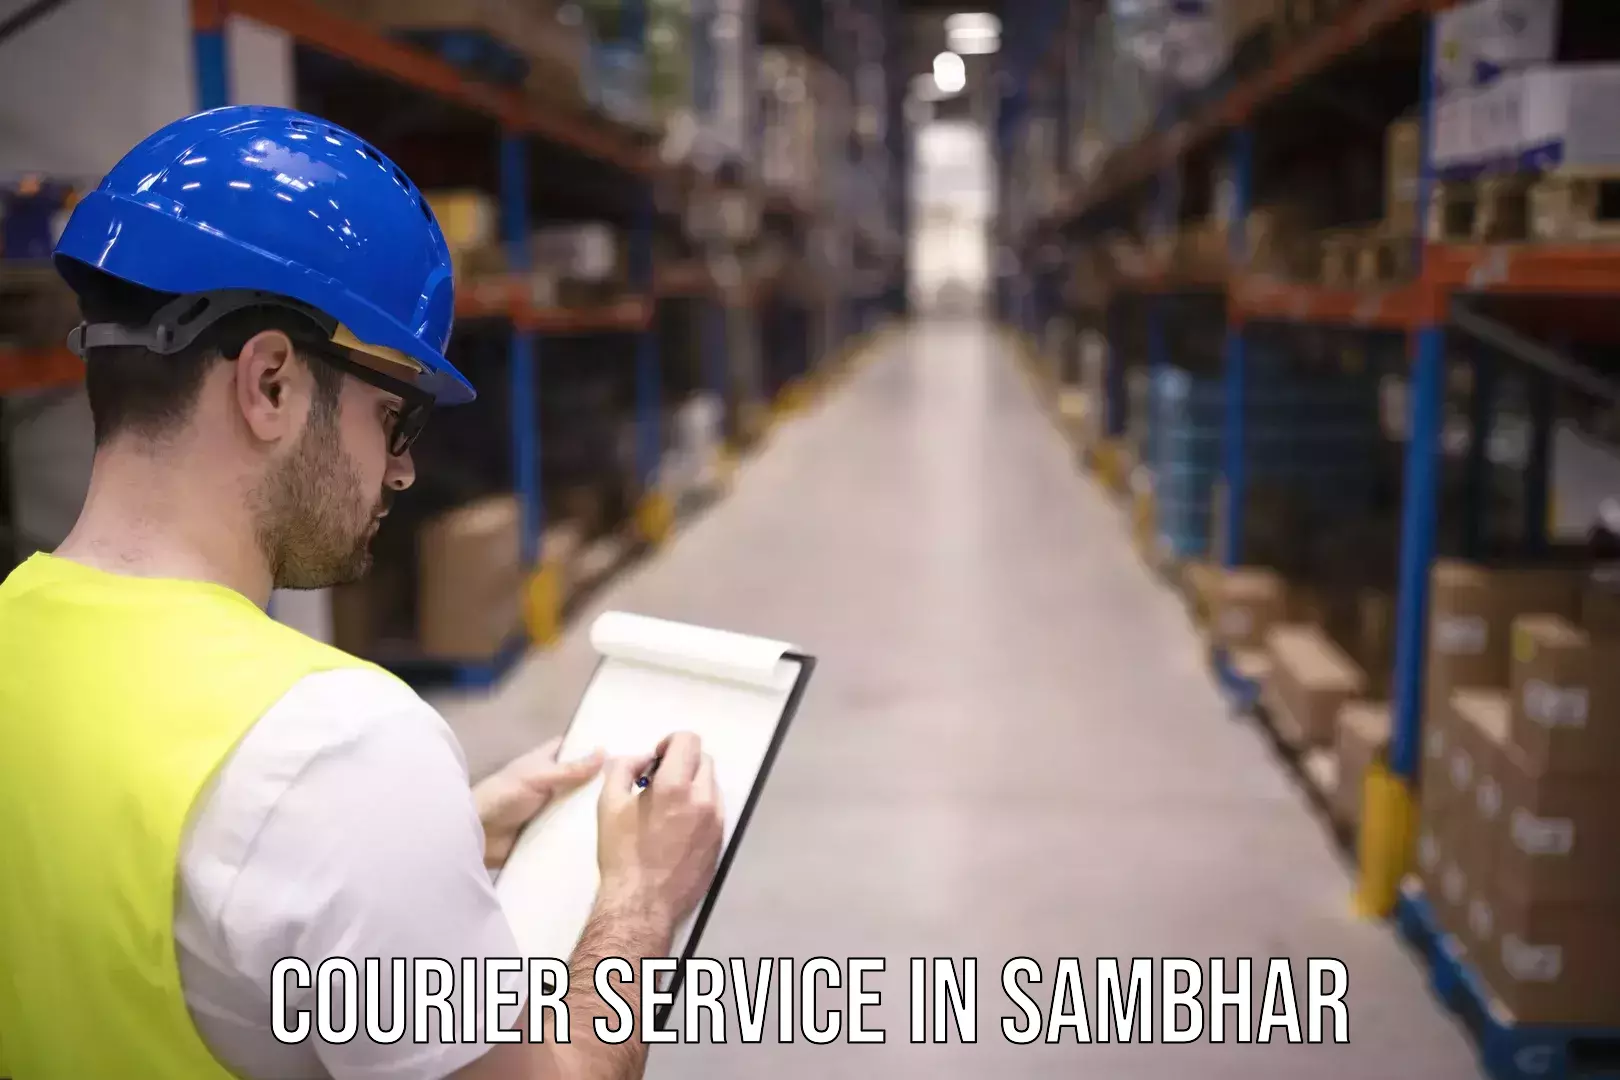 Full-service courier options in Sambhar